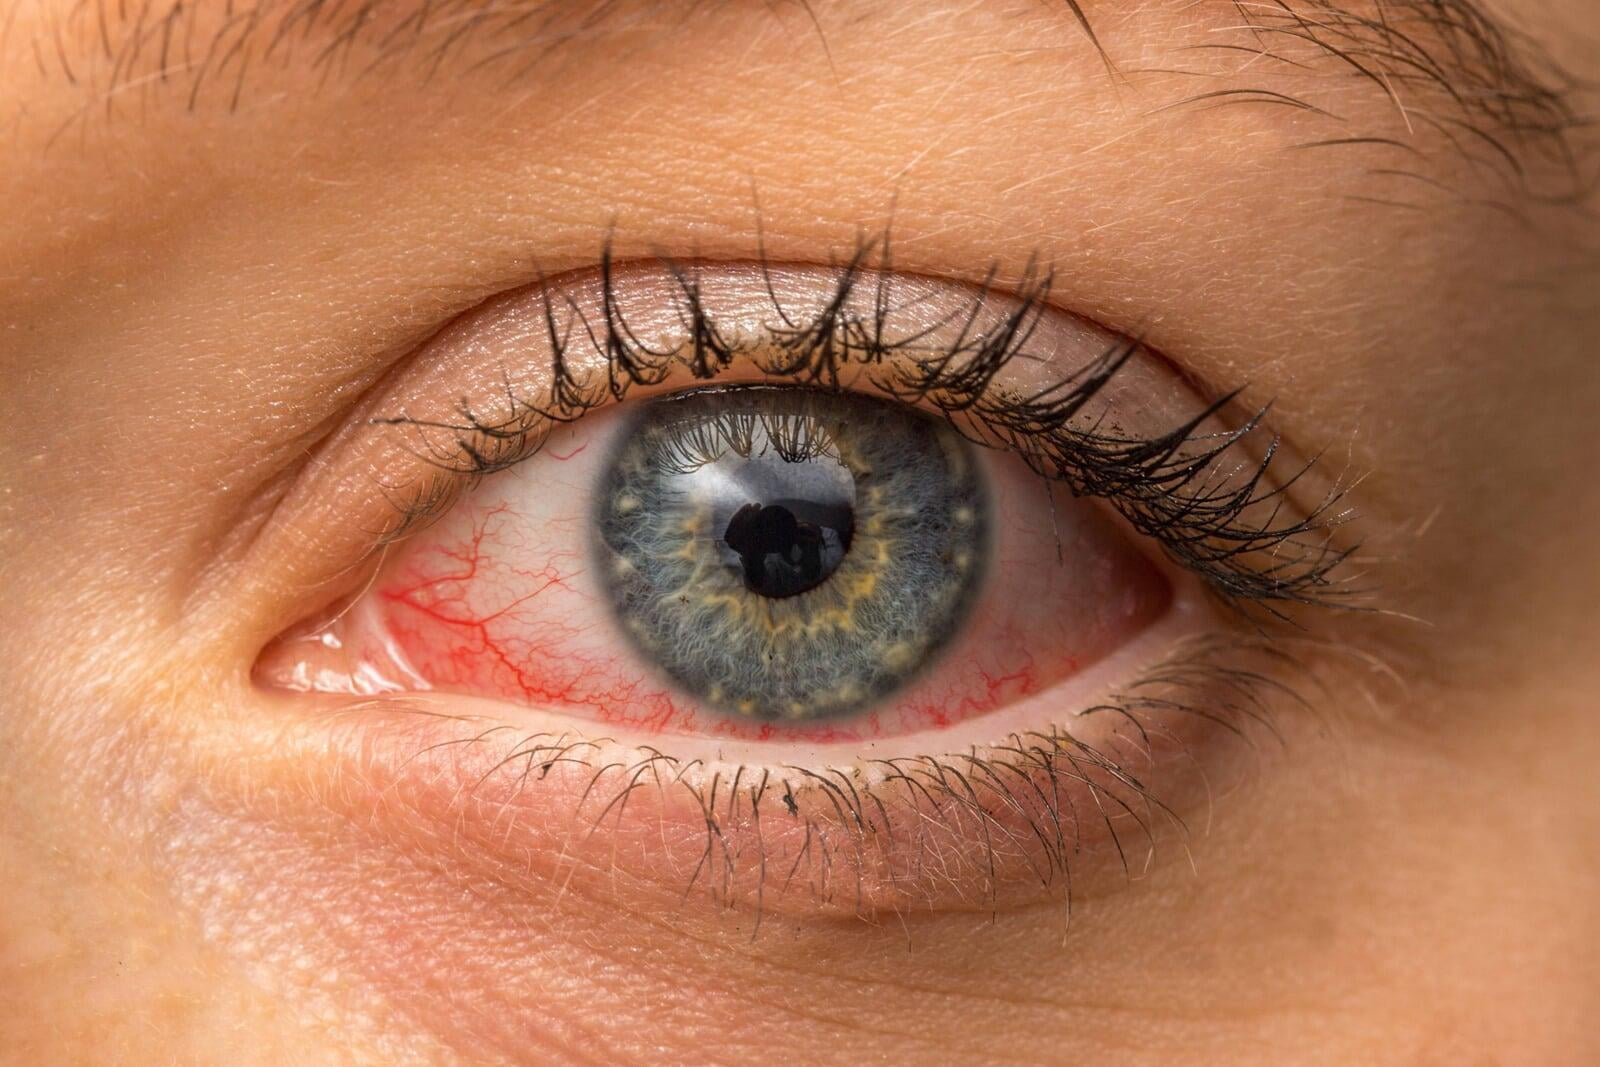 Add "red eyes" as an early symptom of Cov2